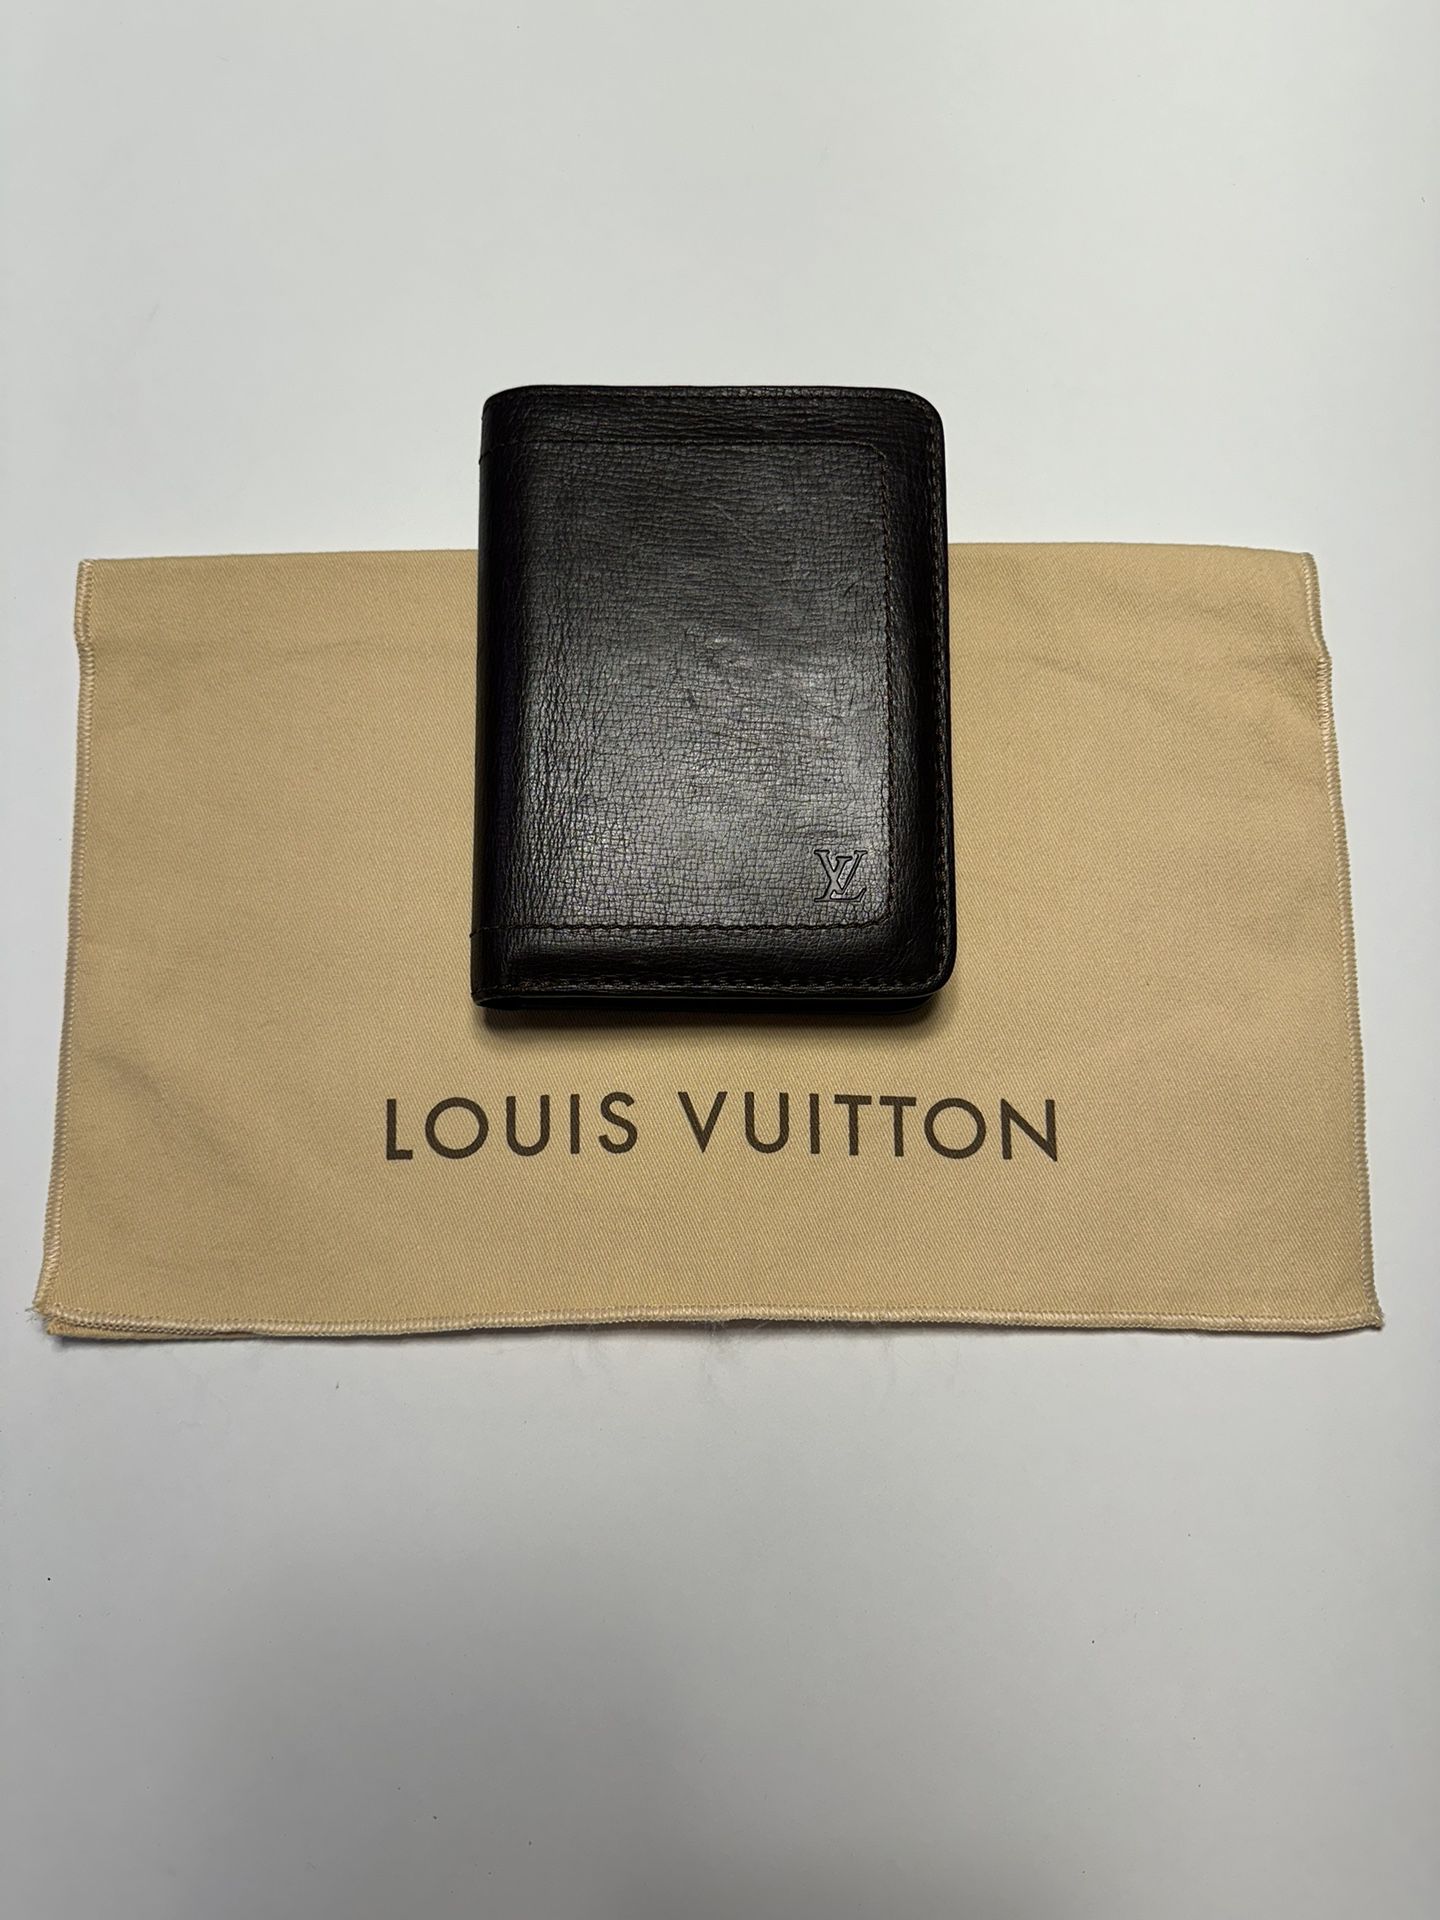 Louis Vuitton Passport, Credit Card Holder Wallet